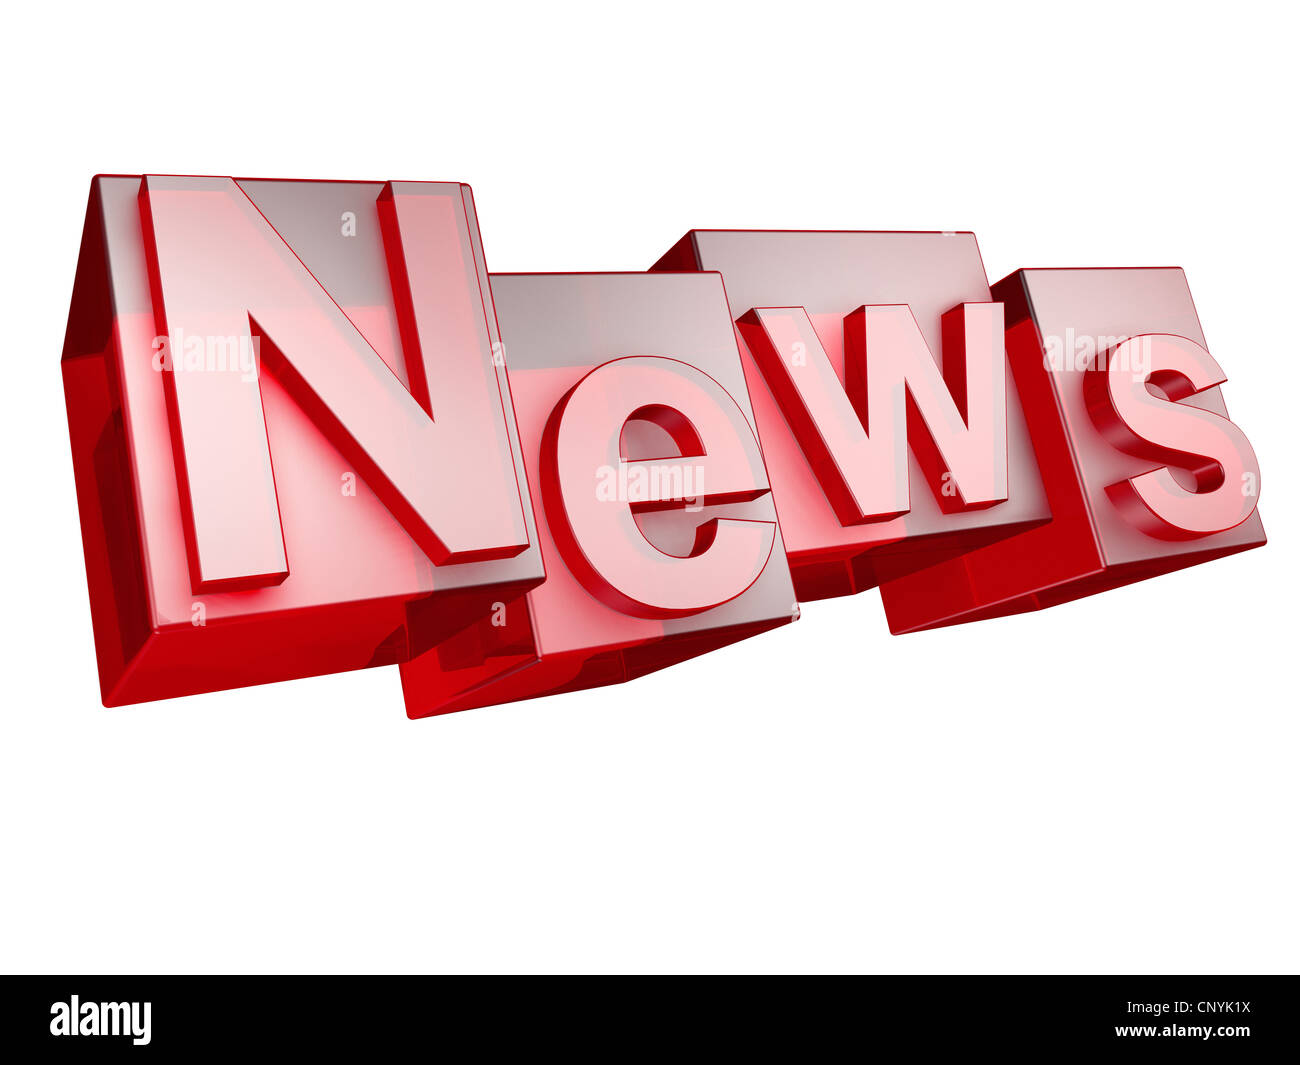 La palabra noticias en 3D letras sobre fondo blanco - das Wort noticias aus 3D Buchstaben gesetzt, freigestellt auf weißem Hintergrund Foto de stock